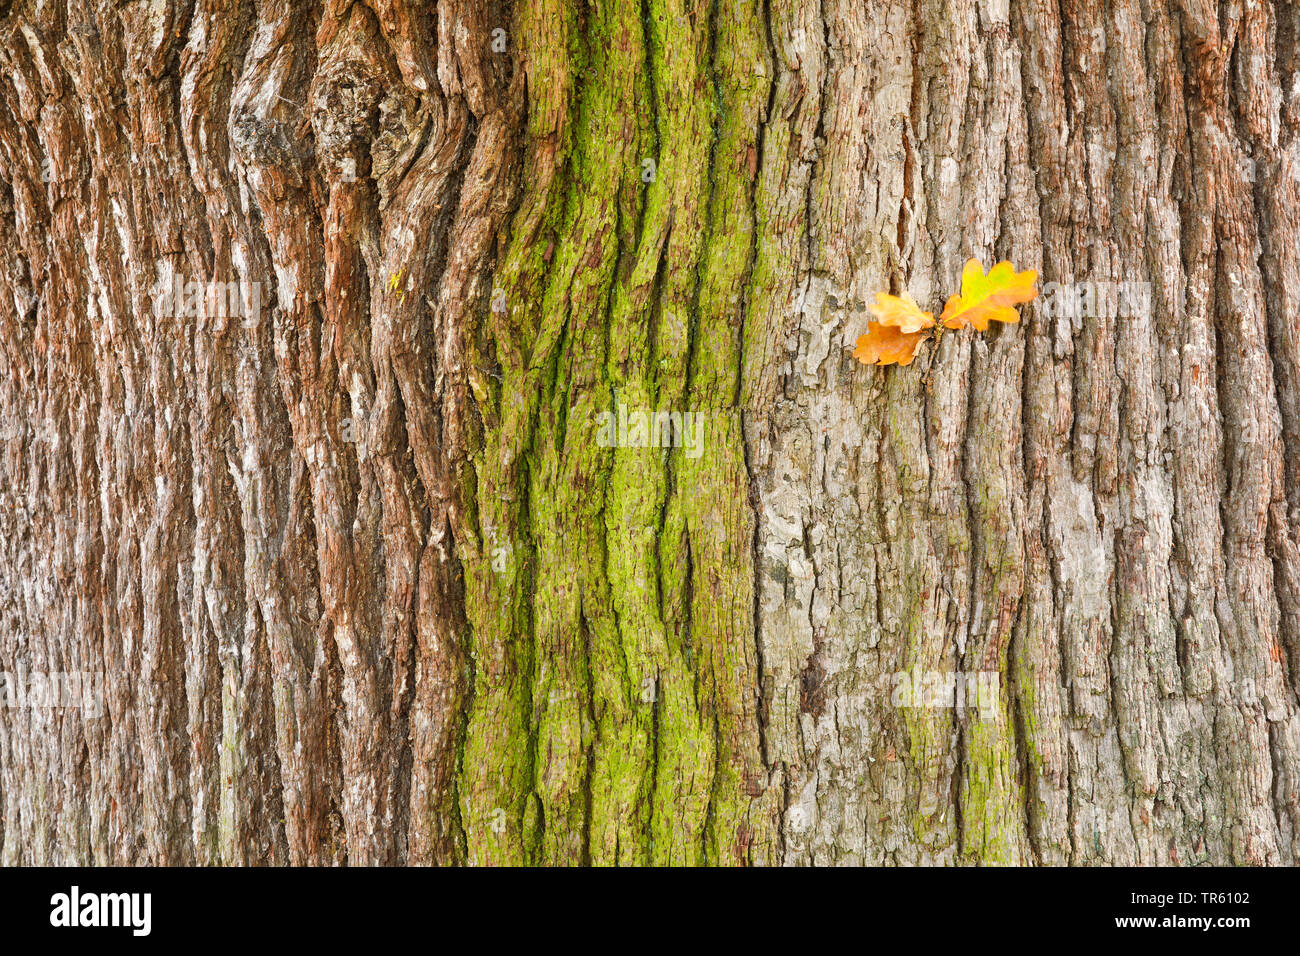 Stiel-Eiche, Stieleiche (Quercus robur. Quercus pedunculata), Eichenrinde von Algen ueberzogen, mit trockenen Eichenblaettern, Grossbritannien, Englan Stock Photo